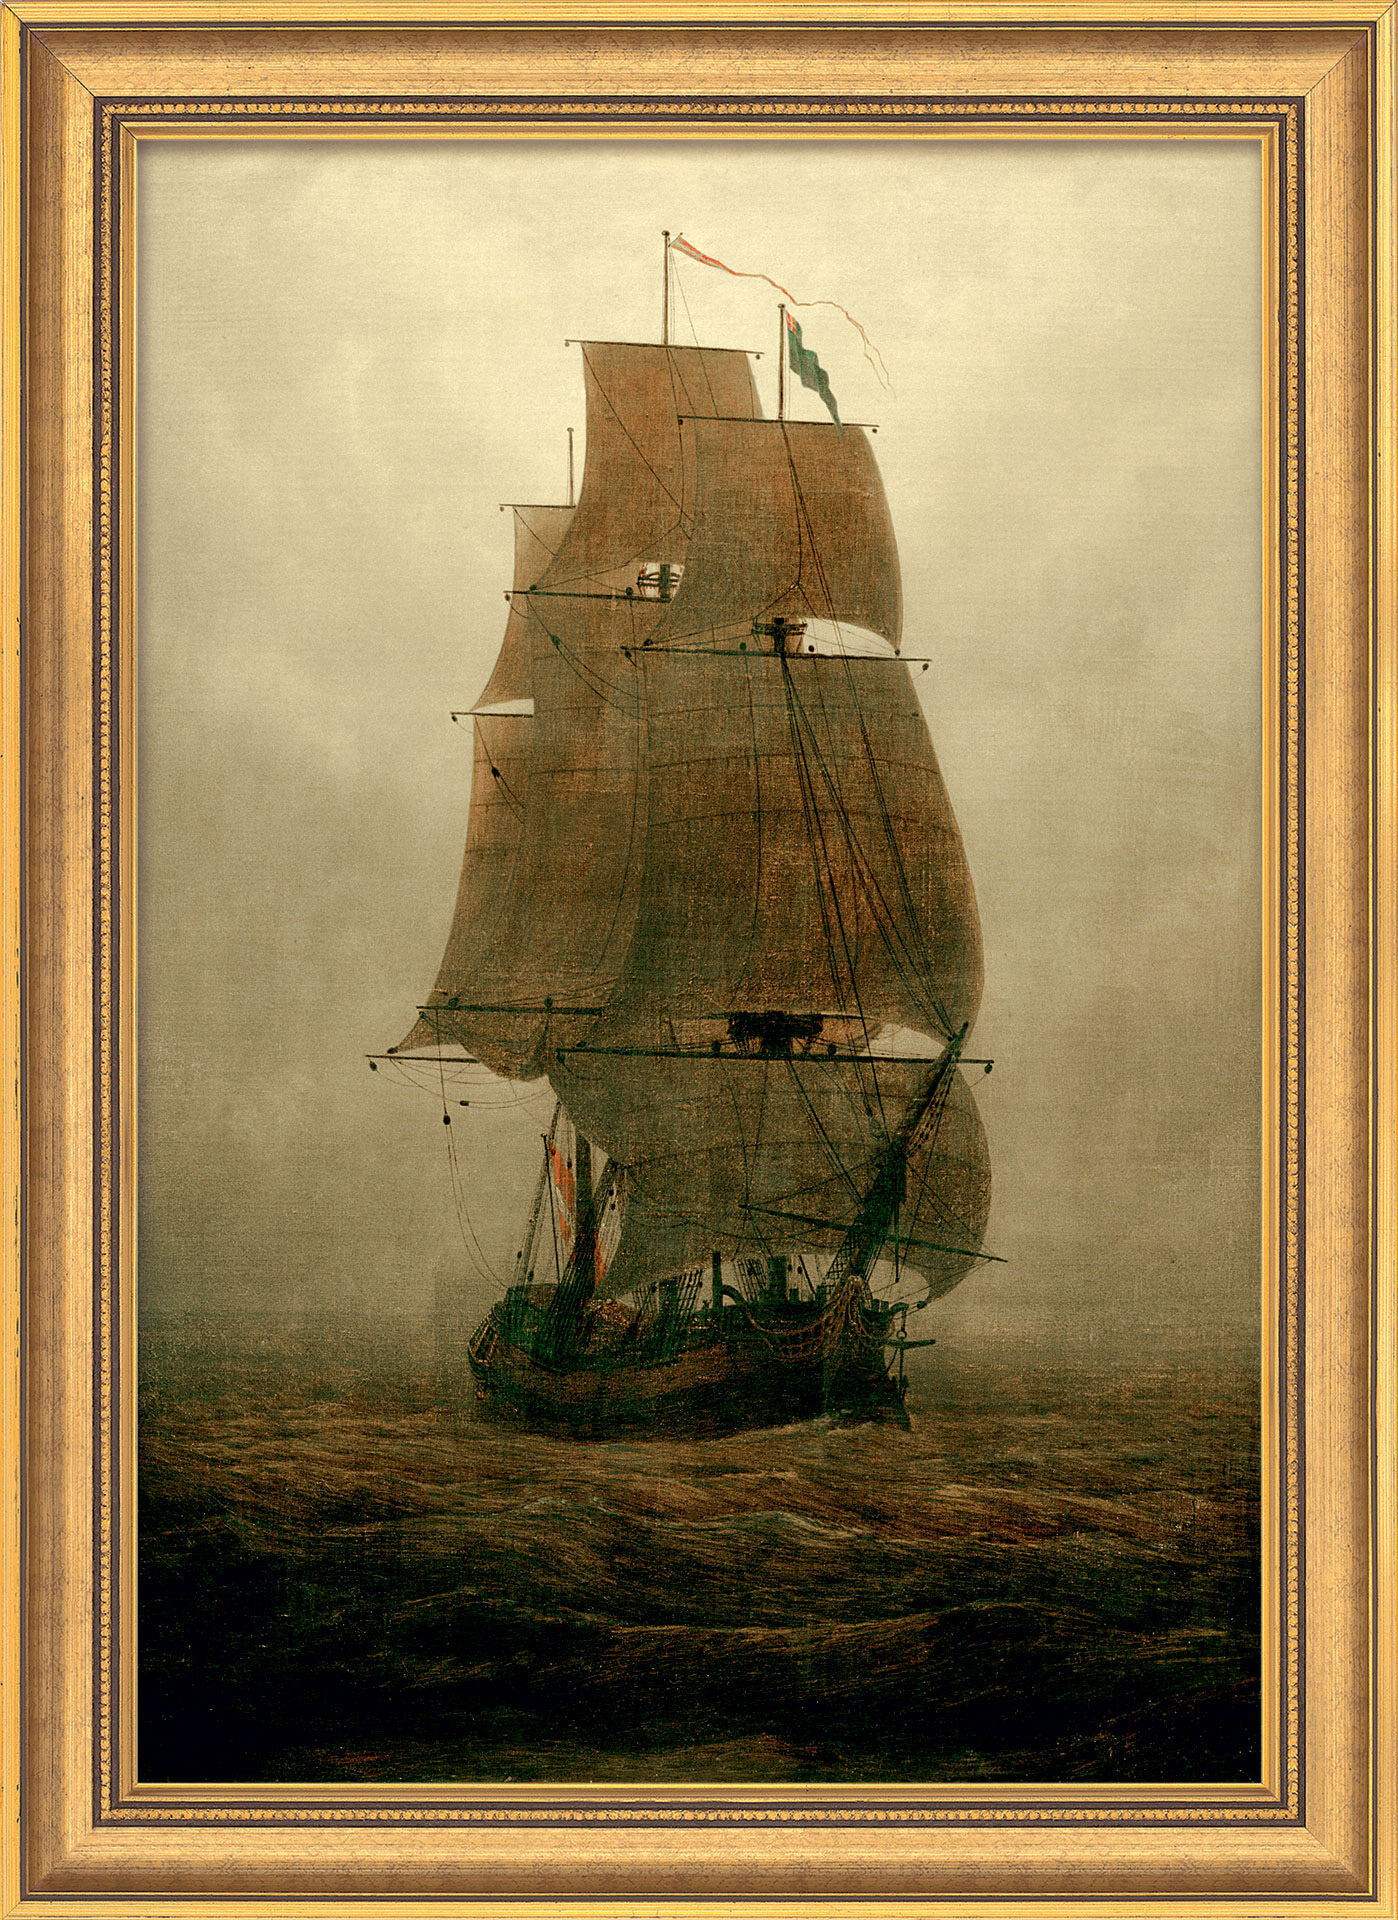 Beeld "Zeilschip in de mist" (1815), ingelijst von Caspar David Friedrich